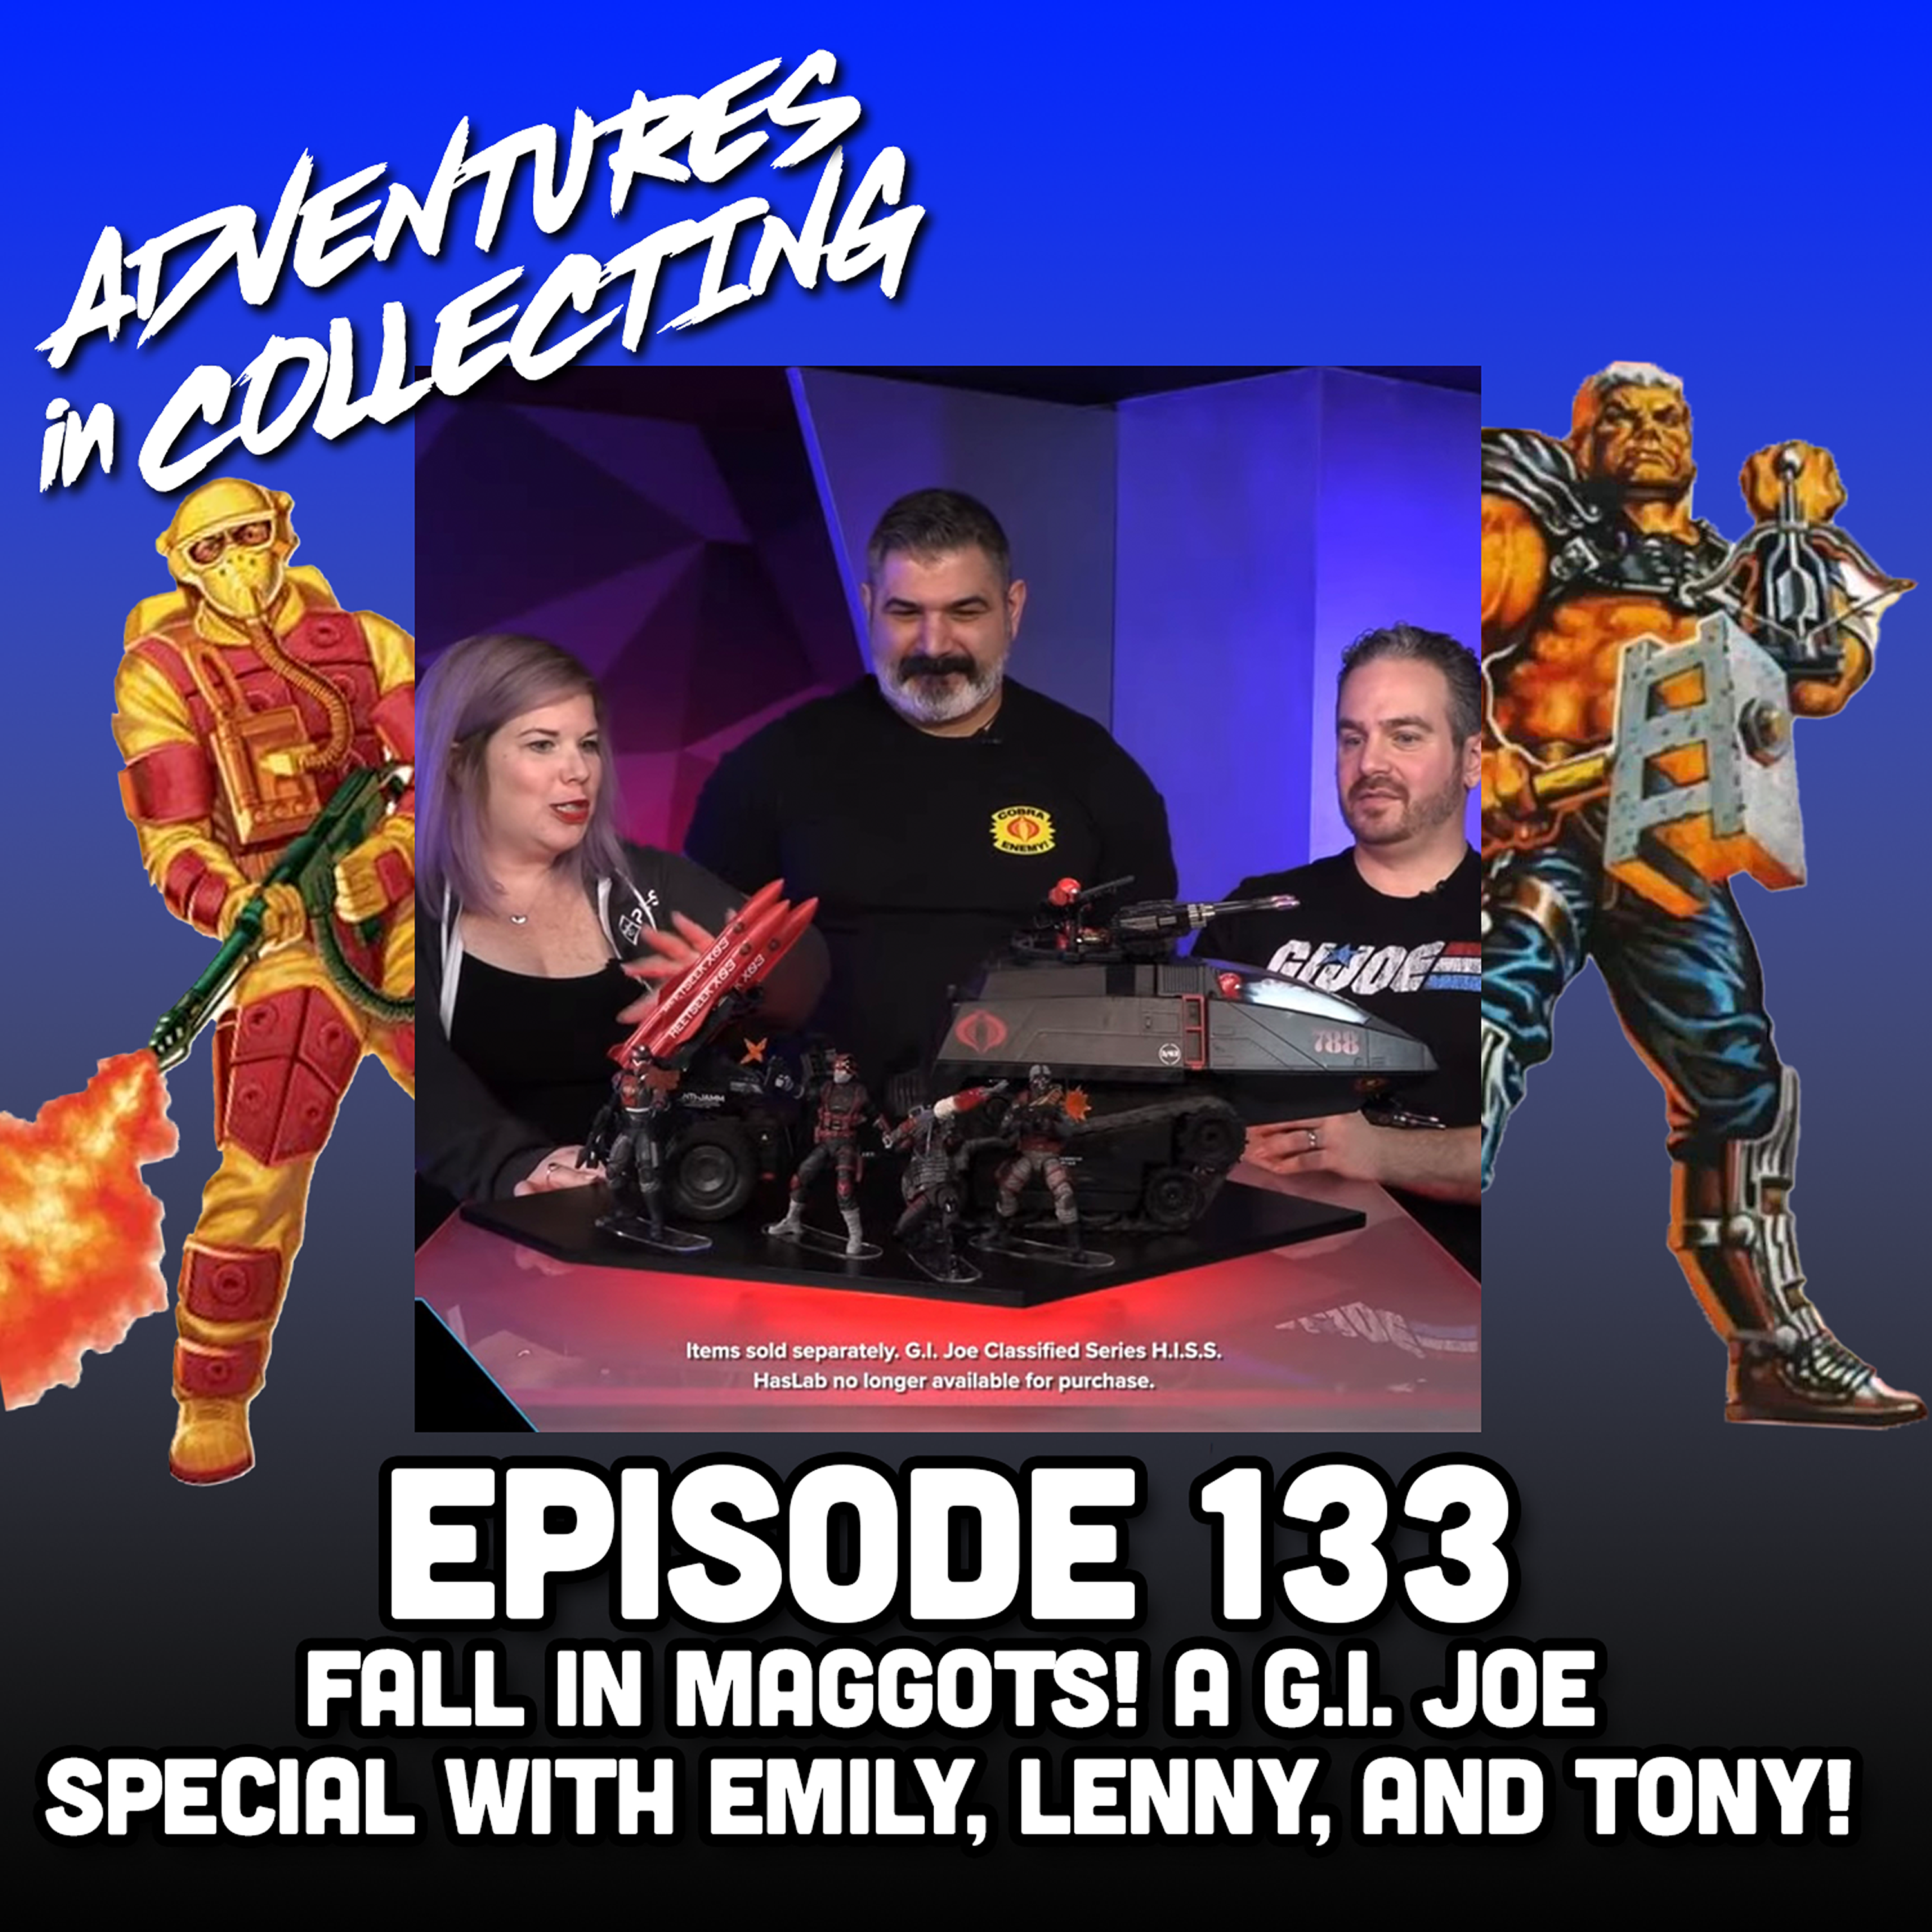 Fall in, Maggots! A G.I. Joe Special with Emily, Lenny, and Tony!